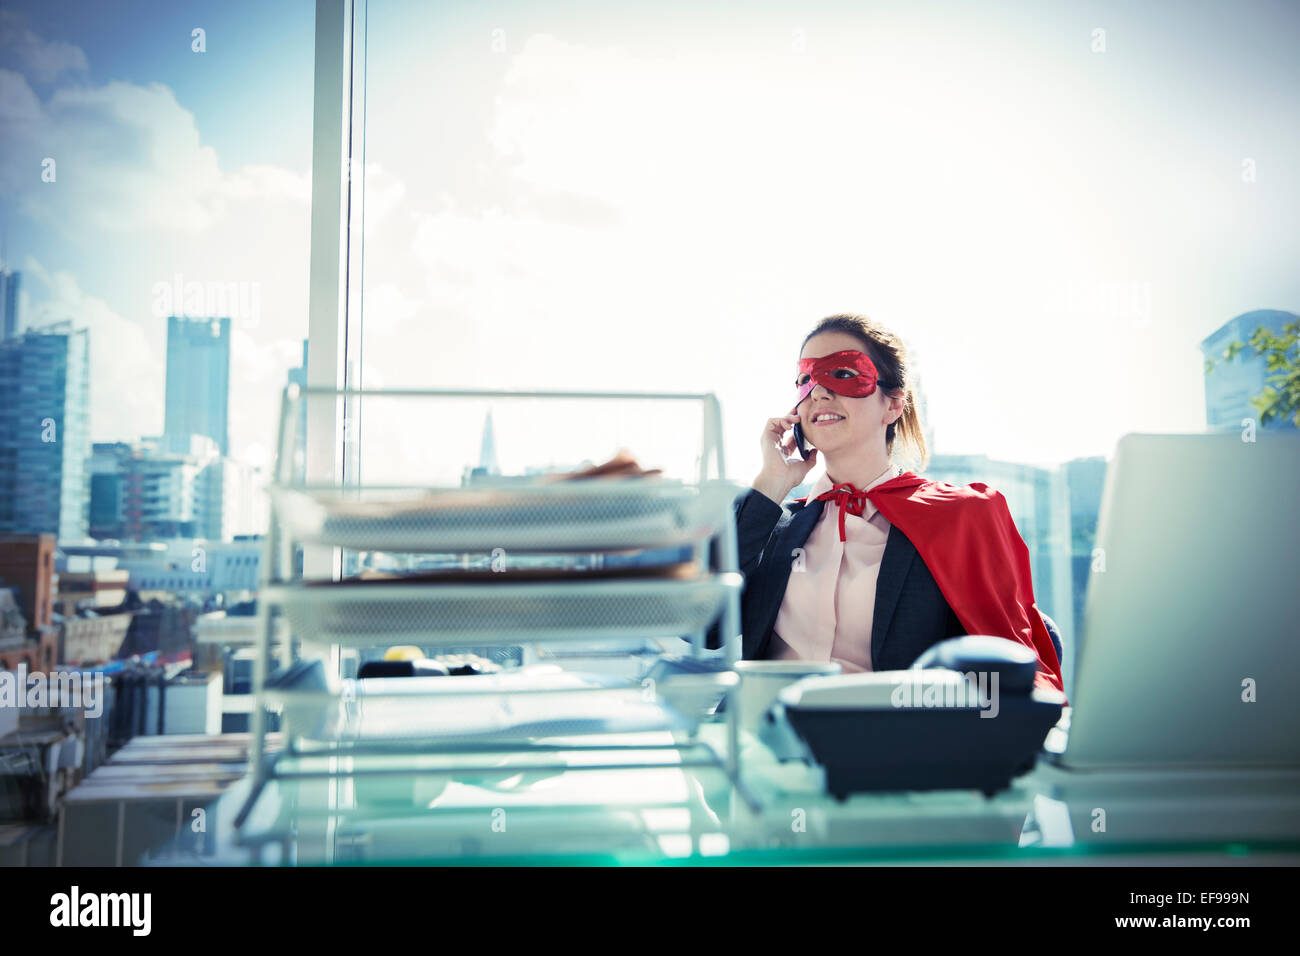 Geschäftsfrau in Cape und Maske Gespräch am Telefon am Schreibtisch Stockfoto